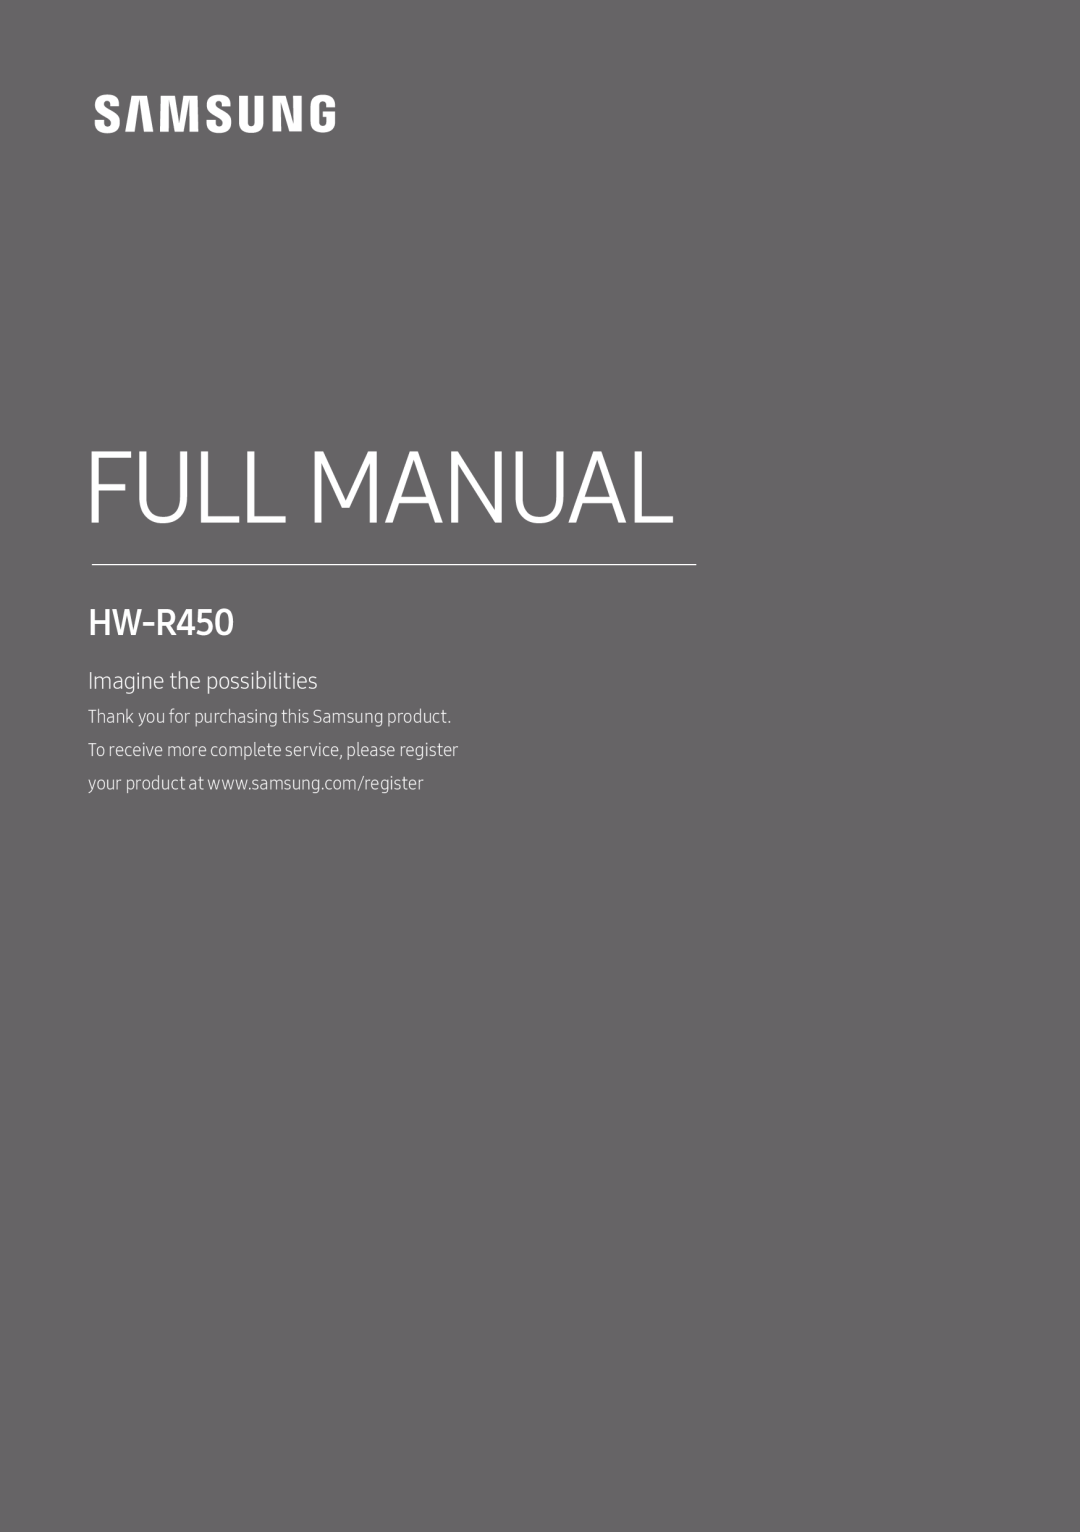 HW-R450 Standard HW-R450